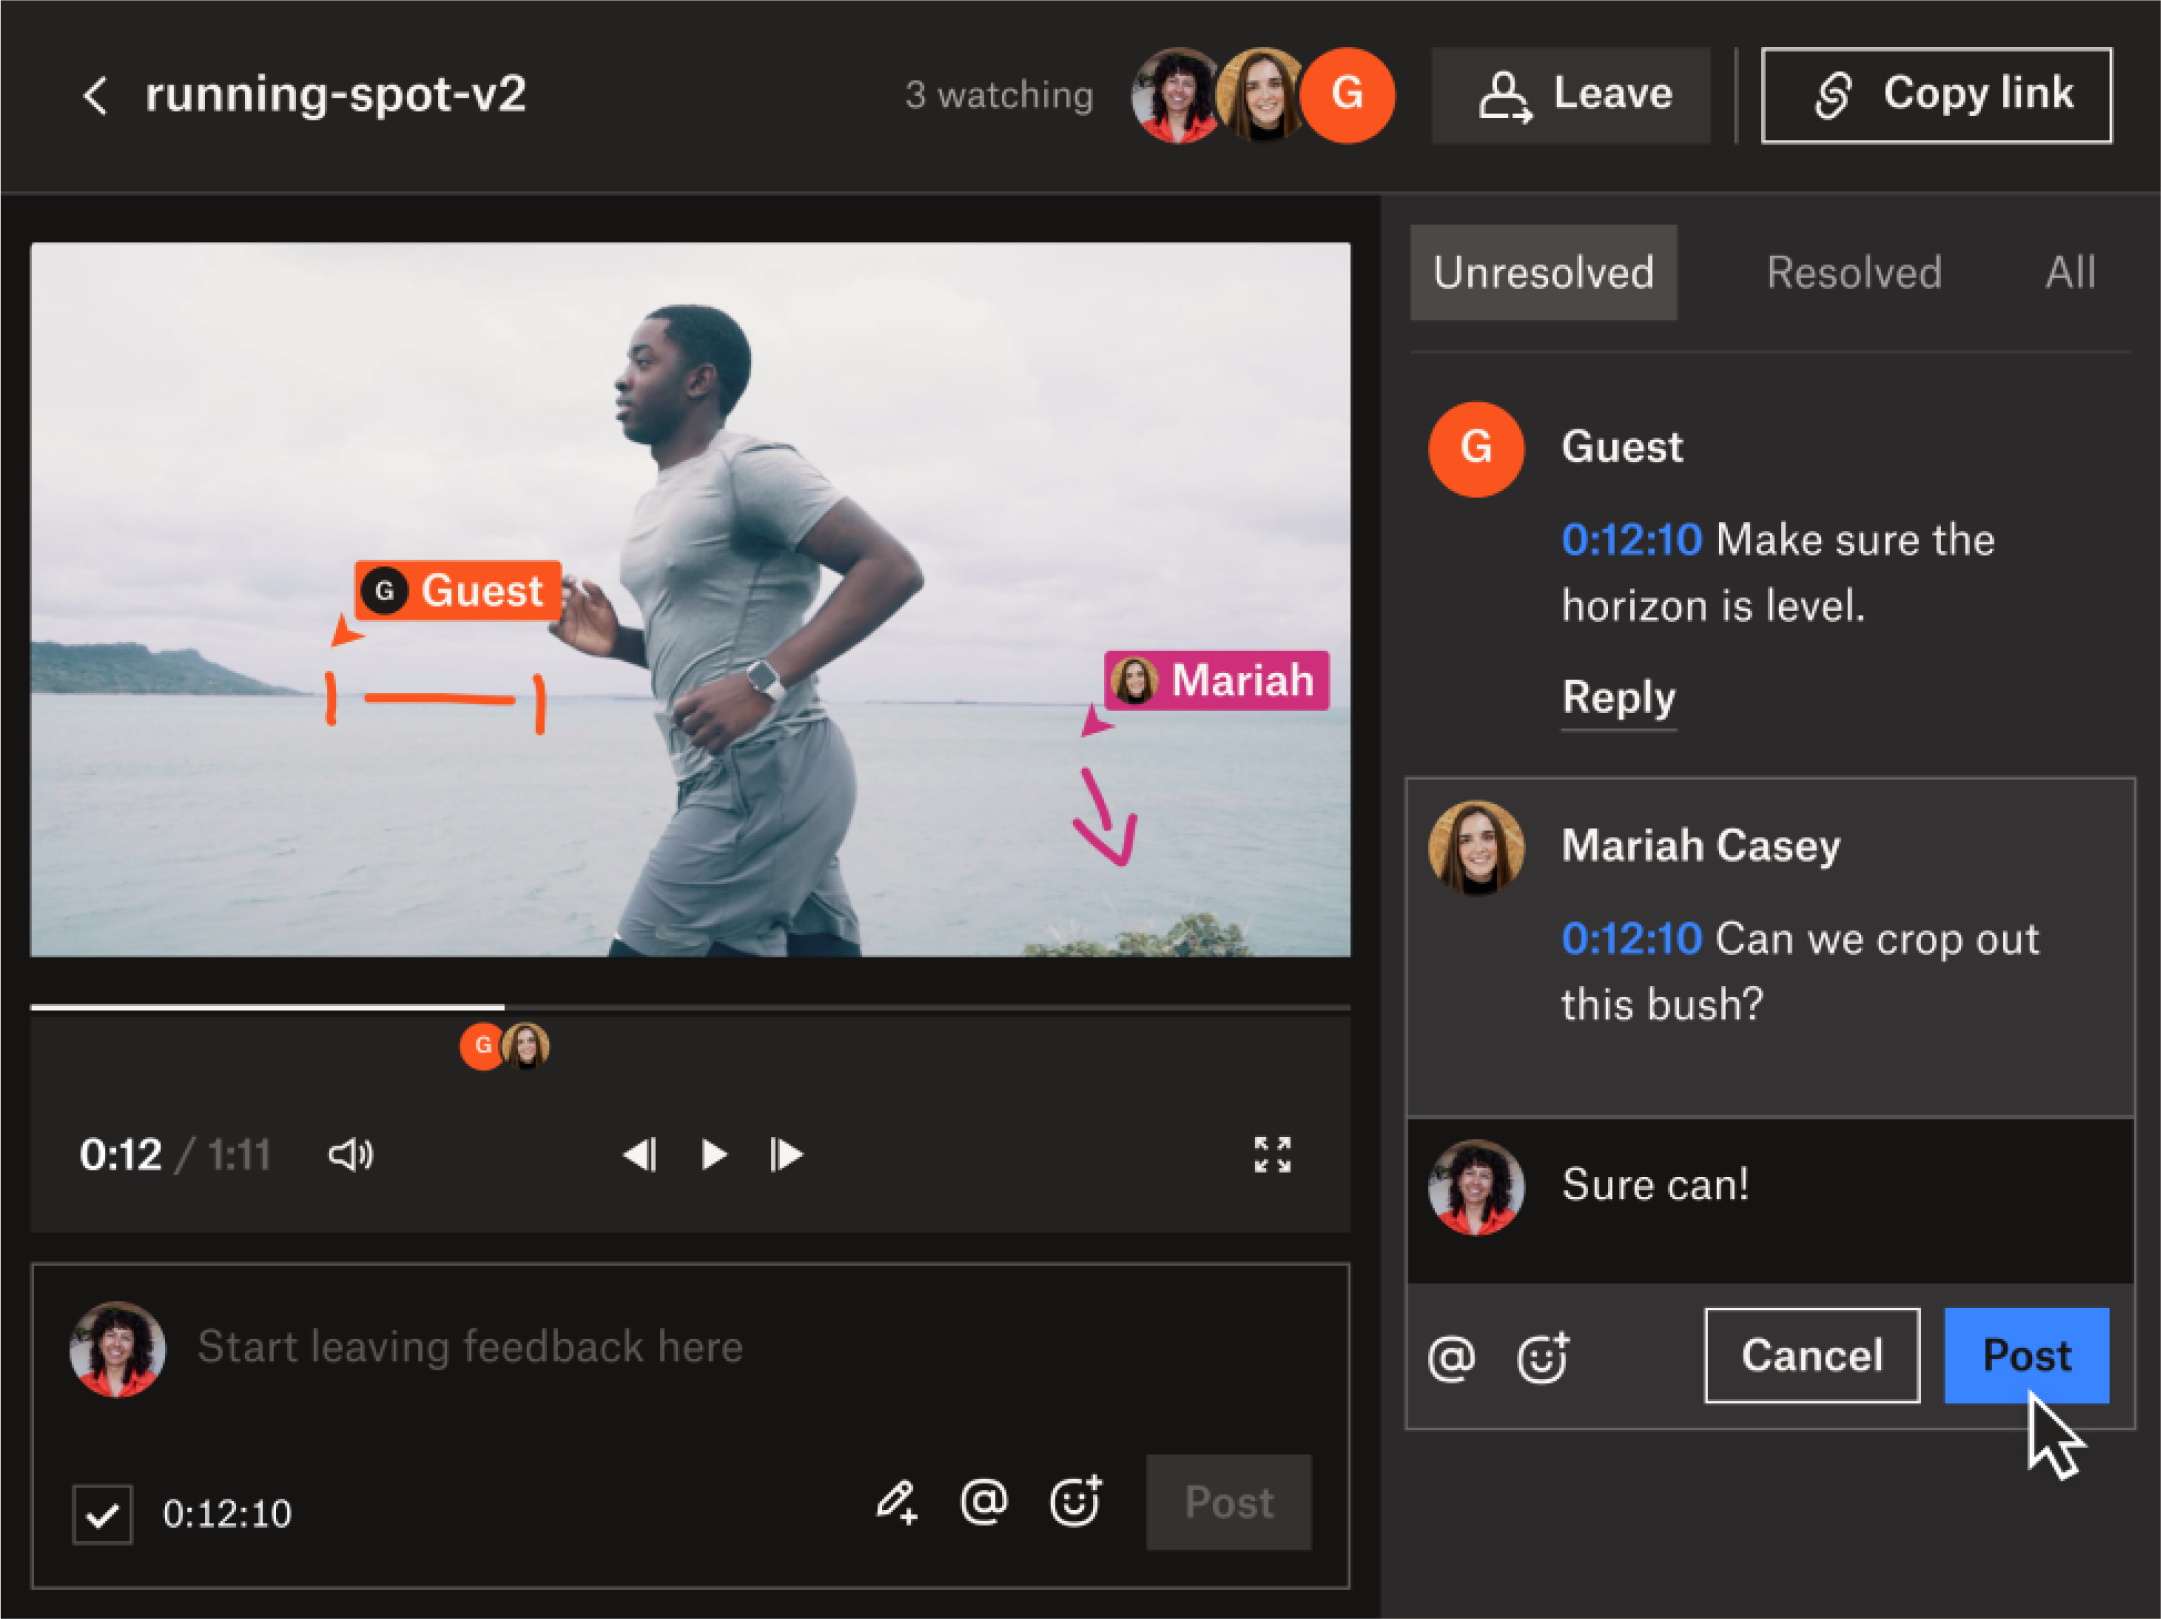 Una representación visual de la característica de revisión en vivo en Dropbox Replay, una herramienta de comentarios en video.